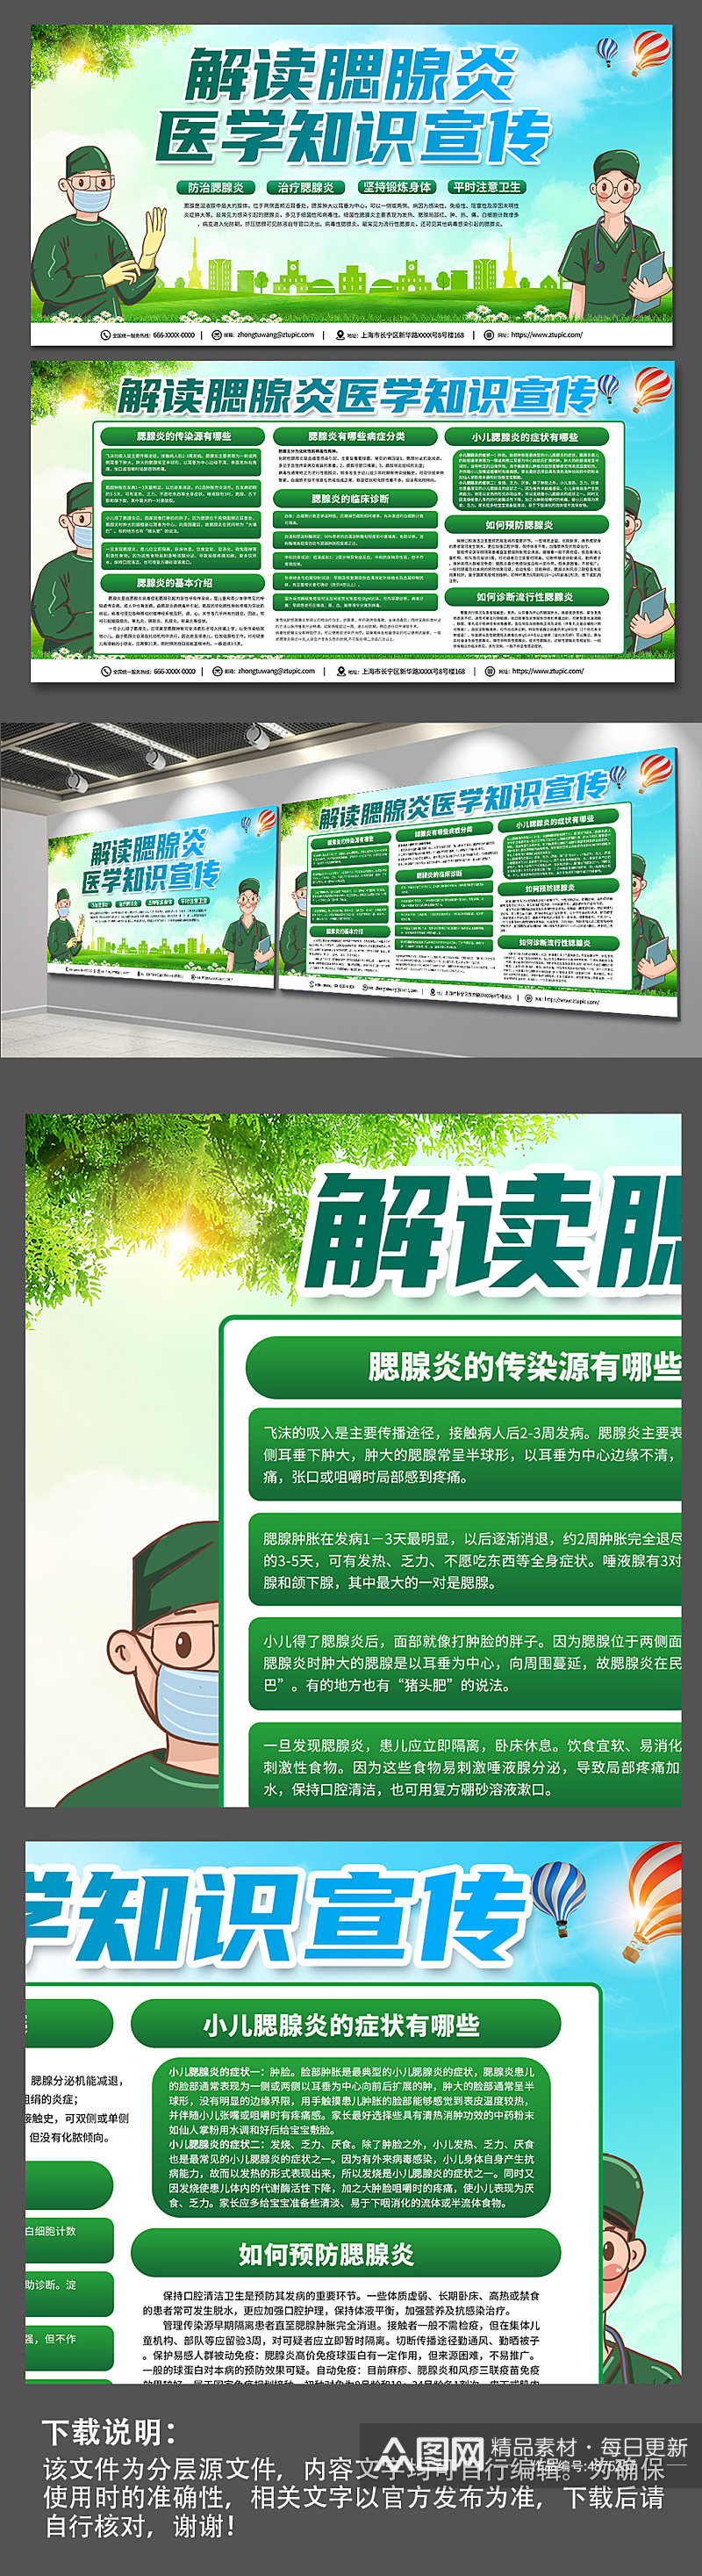 绿色环保腮腺炎防治知识医疗宣传展板素材